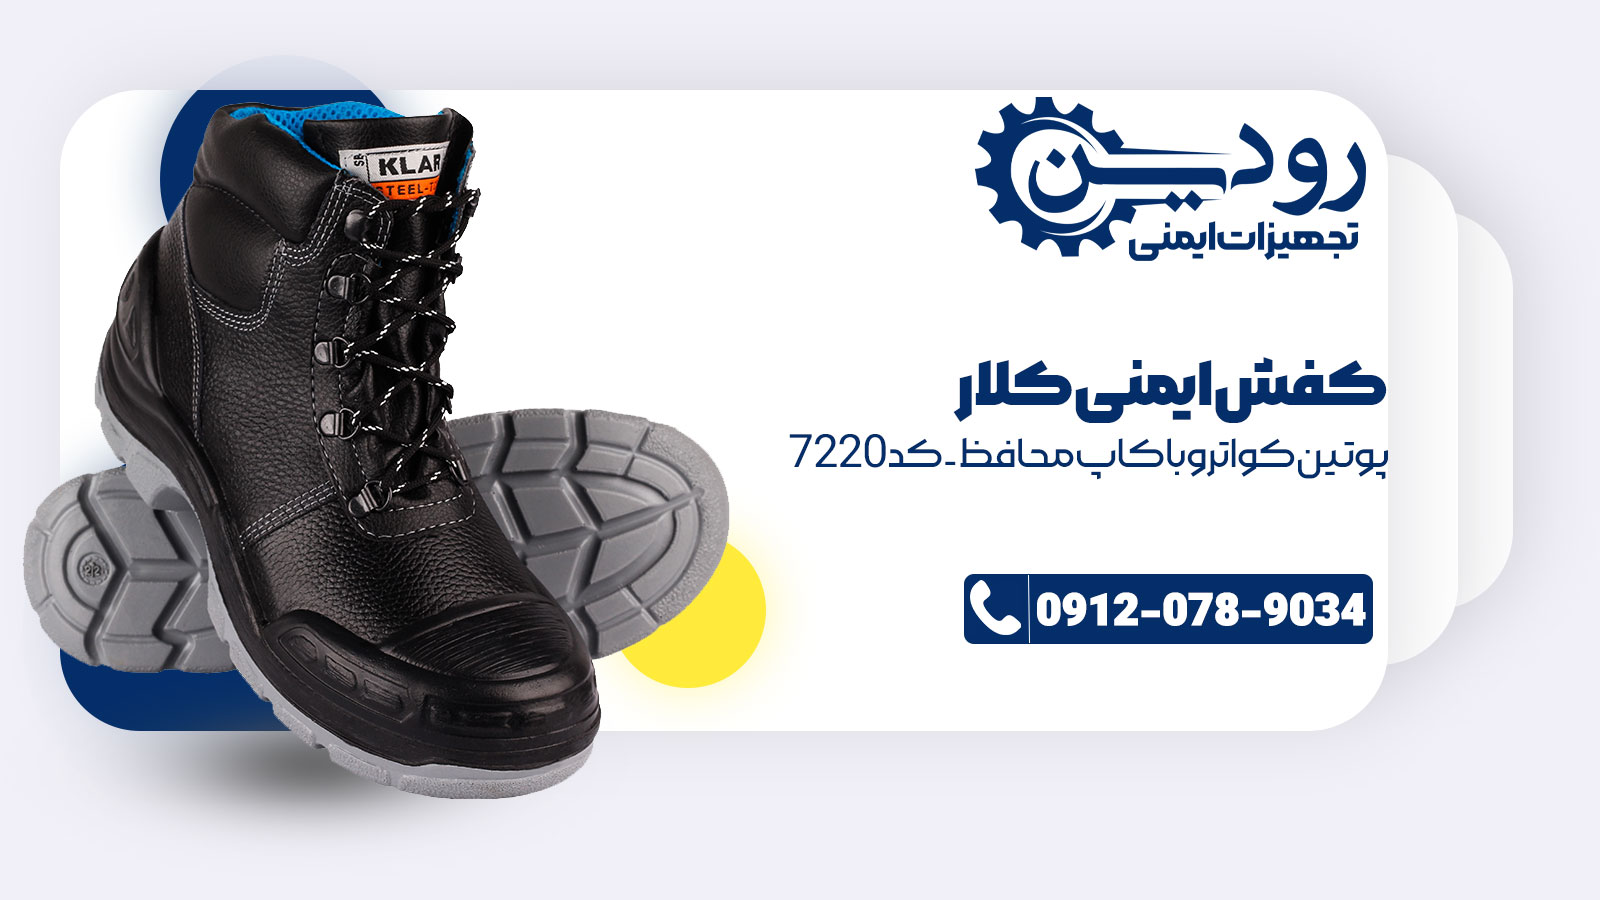 خرید اینترنتی کفش کلار از سایت فروش کفش ایمنی کلار